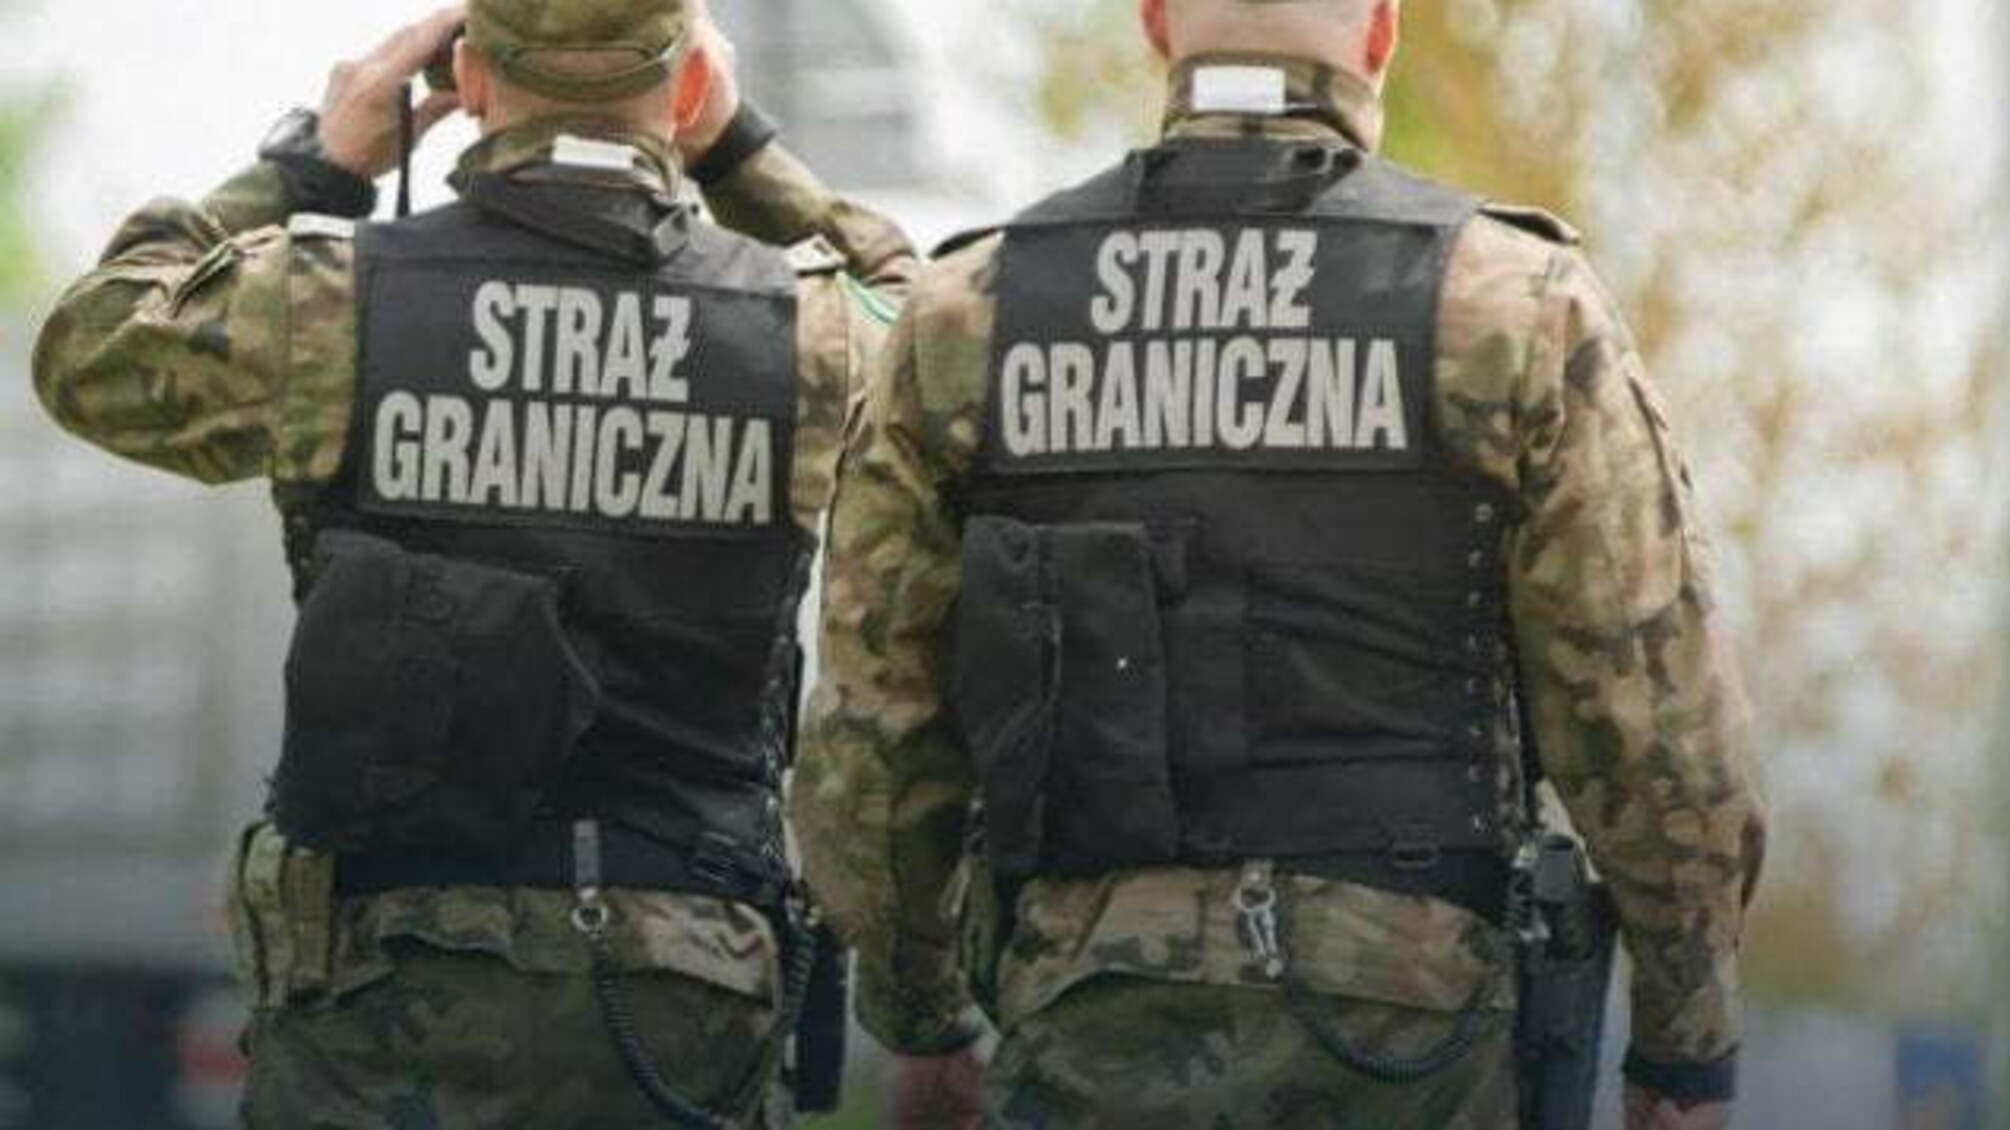 Польські прикордонники затримали громадянина України, який перебував у розшуку